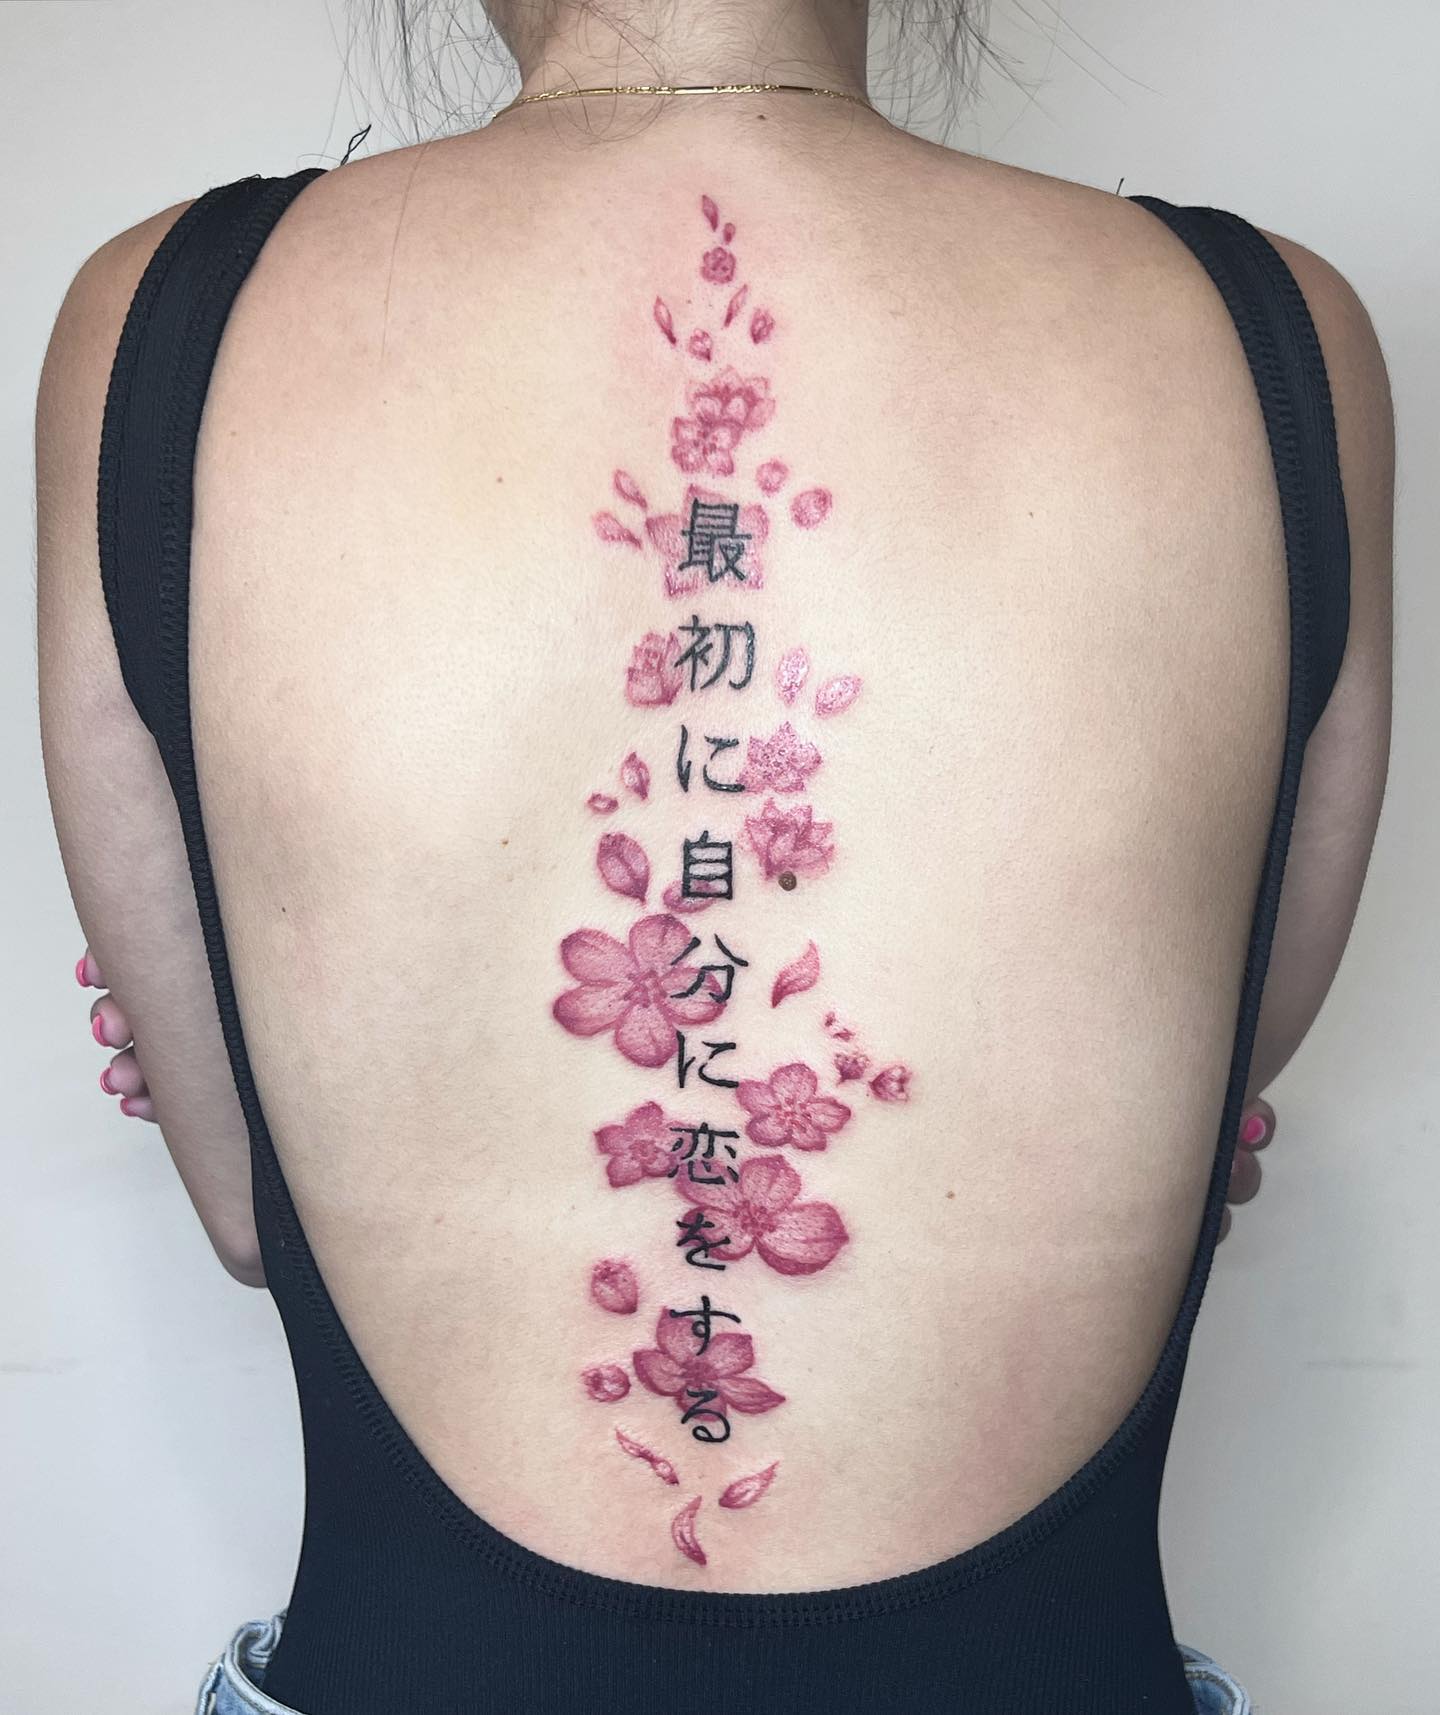 Tatuaje de flor del cerezo en la espalda.